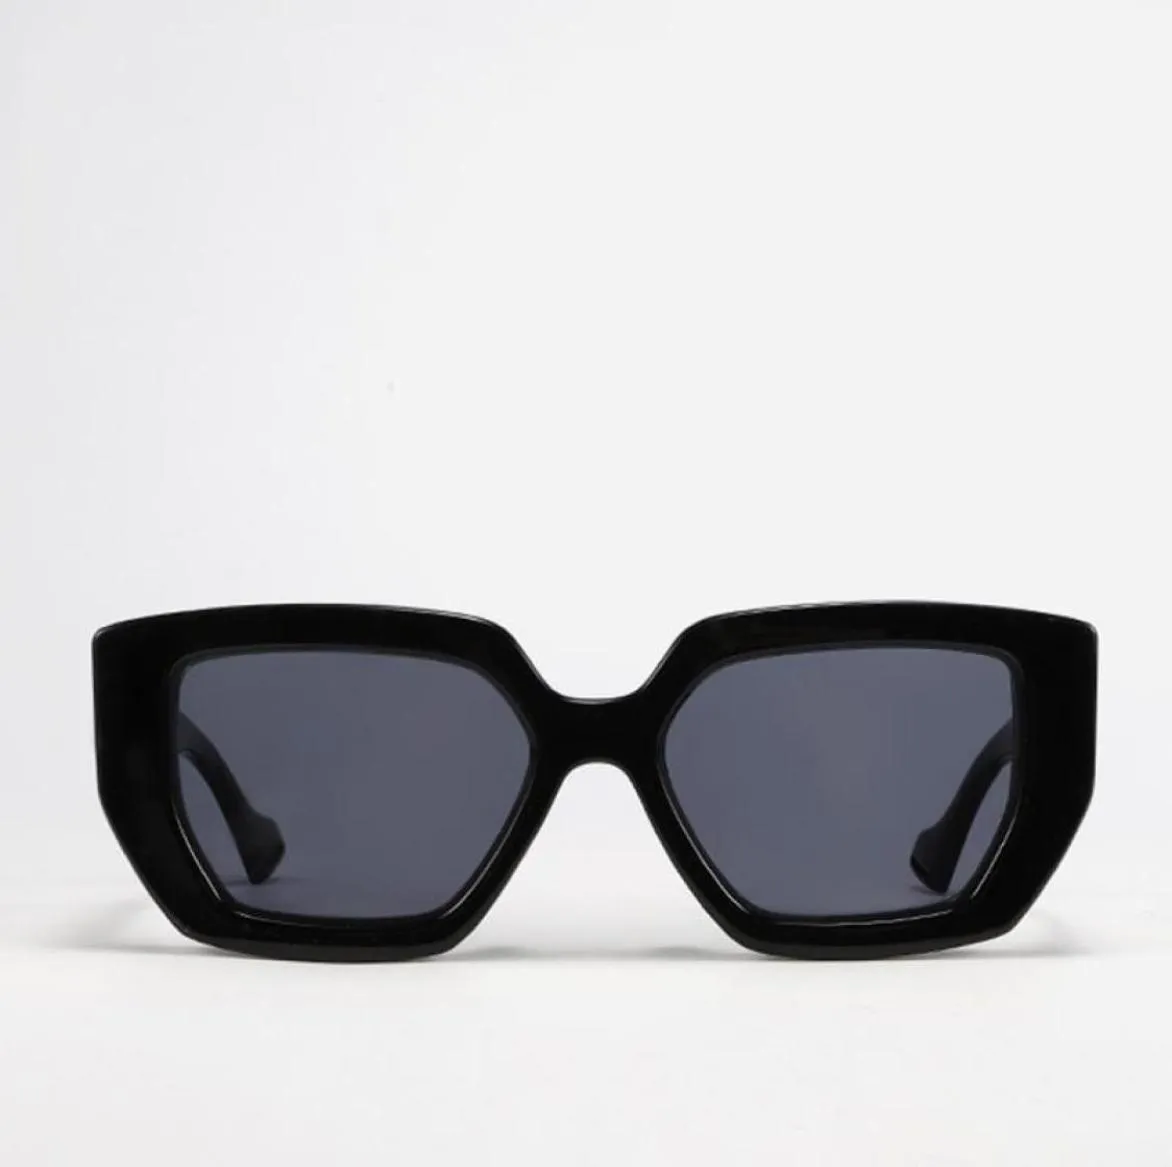 GESEN lunettes de soleil carrées irrégulières hommes Milan Fashion Week 2021 marque de luxe marque célébrité nuances monture épaisse lunettes UV4001582474